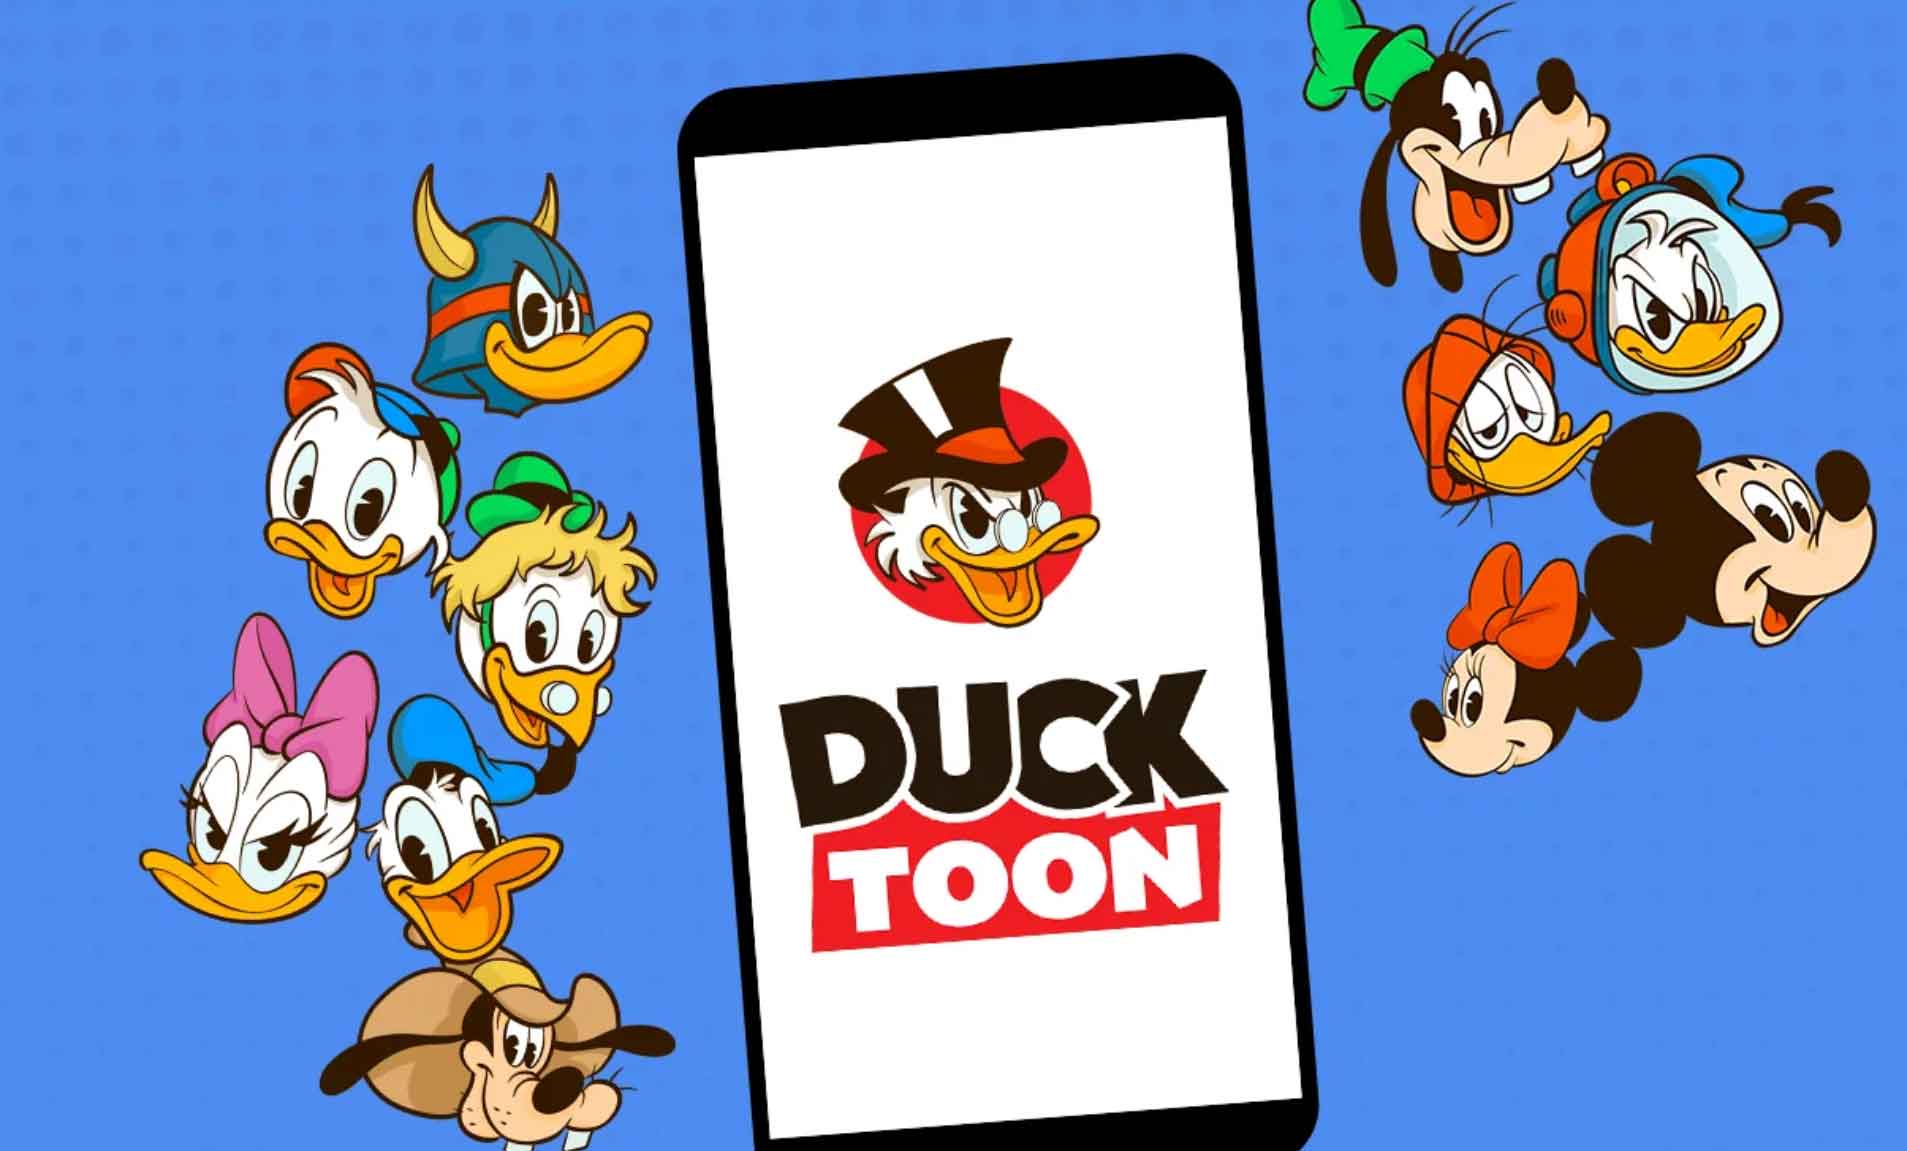 Ducktoon